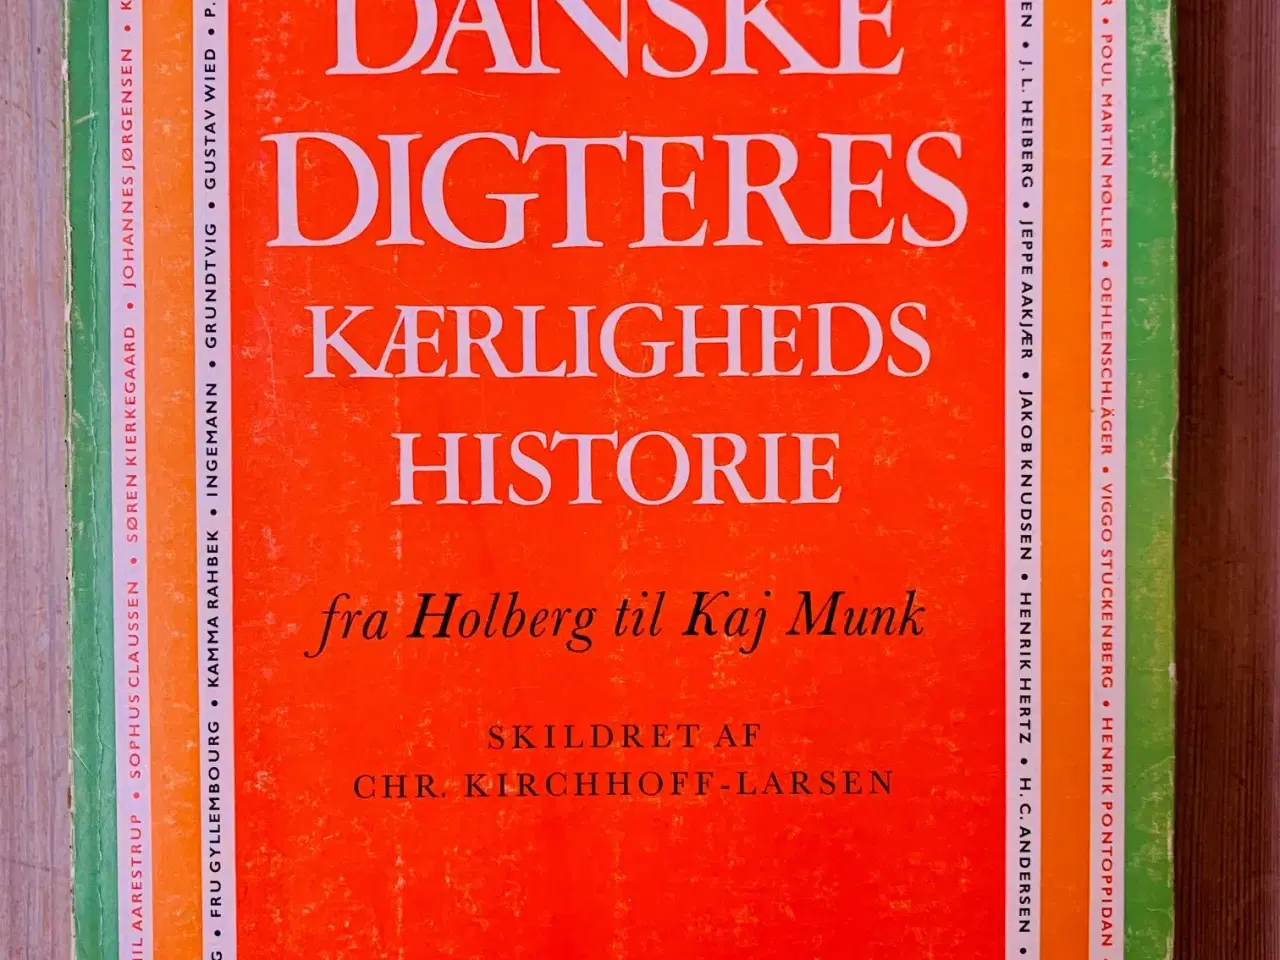 Billede 1 - Danske digteres kærlighedshistorier (1967)